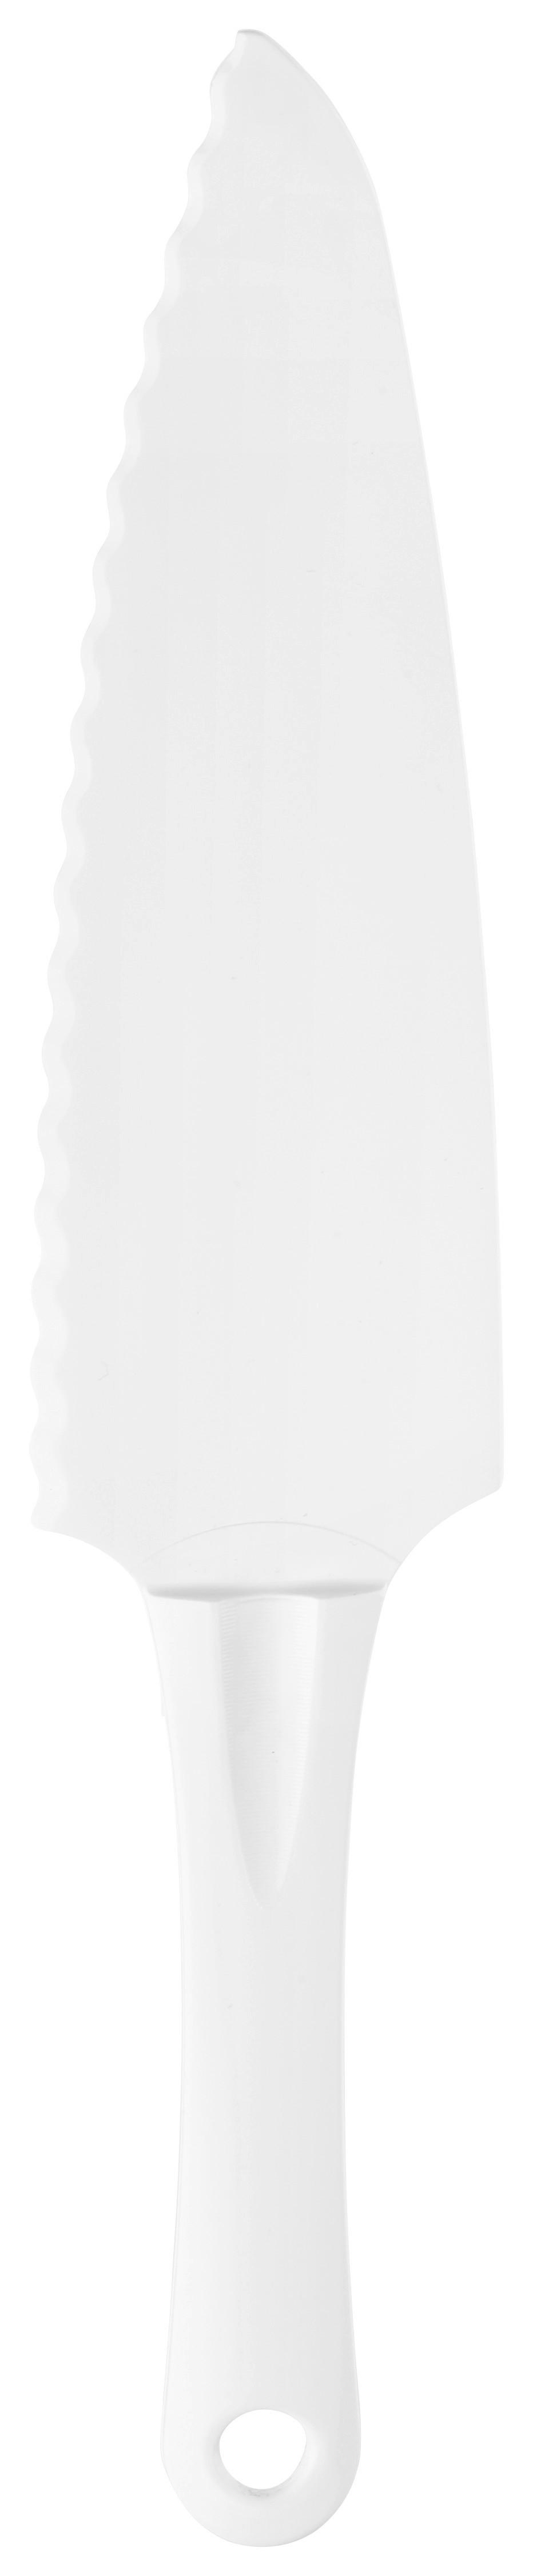 Kuchenheber XMAS 2 aus Kunststoff - Weiß, KONVENTIONELL, Kunststoff (25cm) - Zenker